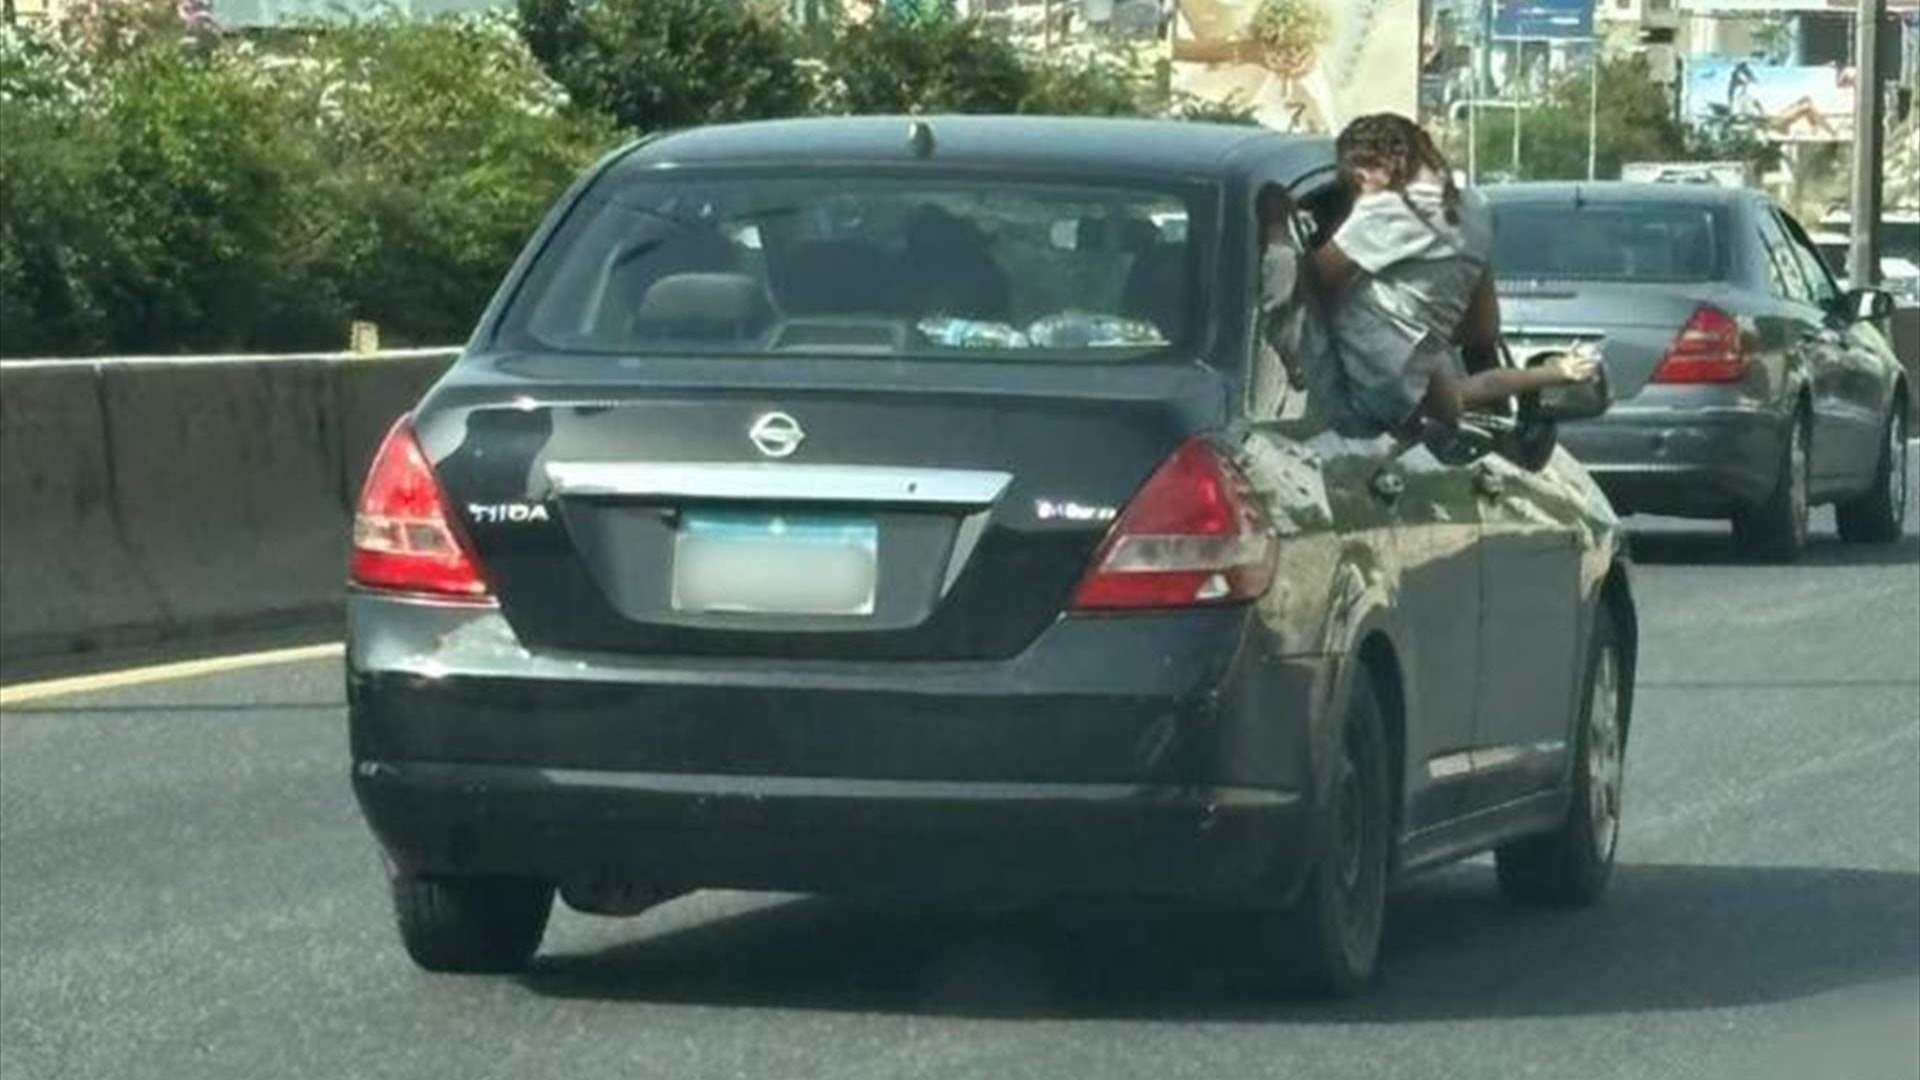 مشاهد الفوضى على طرقات لبنان لا تنتهي... طفلة تخرج من نافذة السيارة على الأوتوستراد   